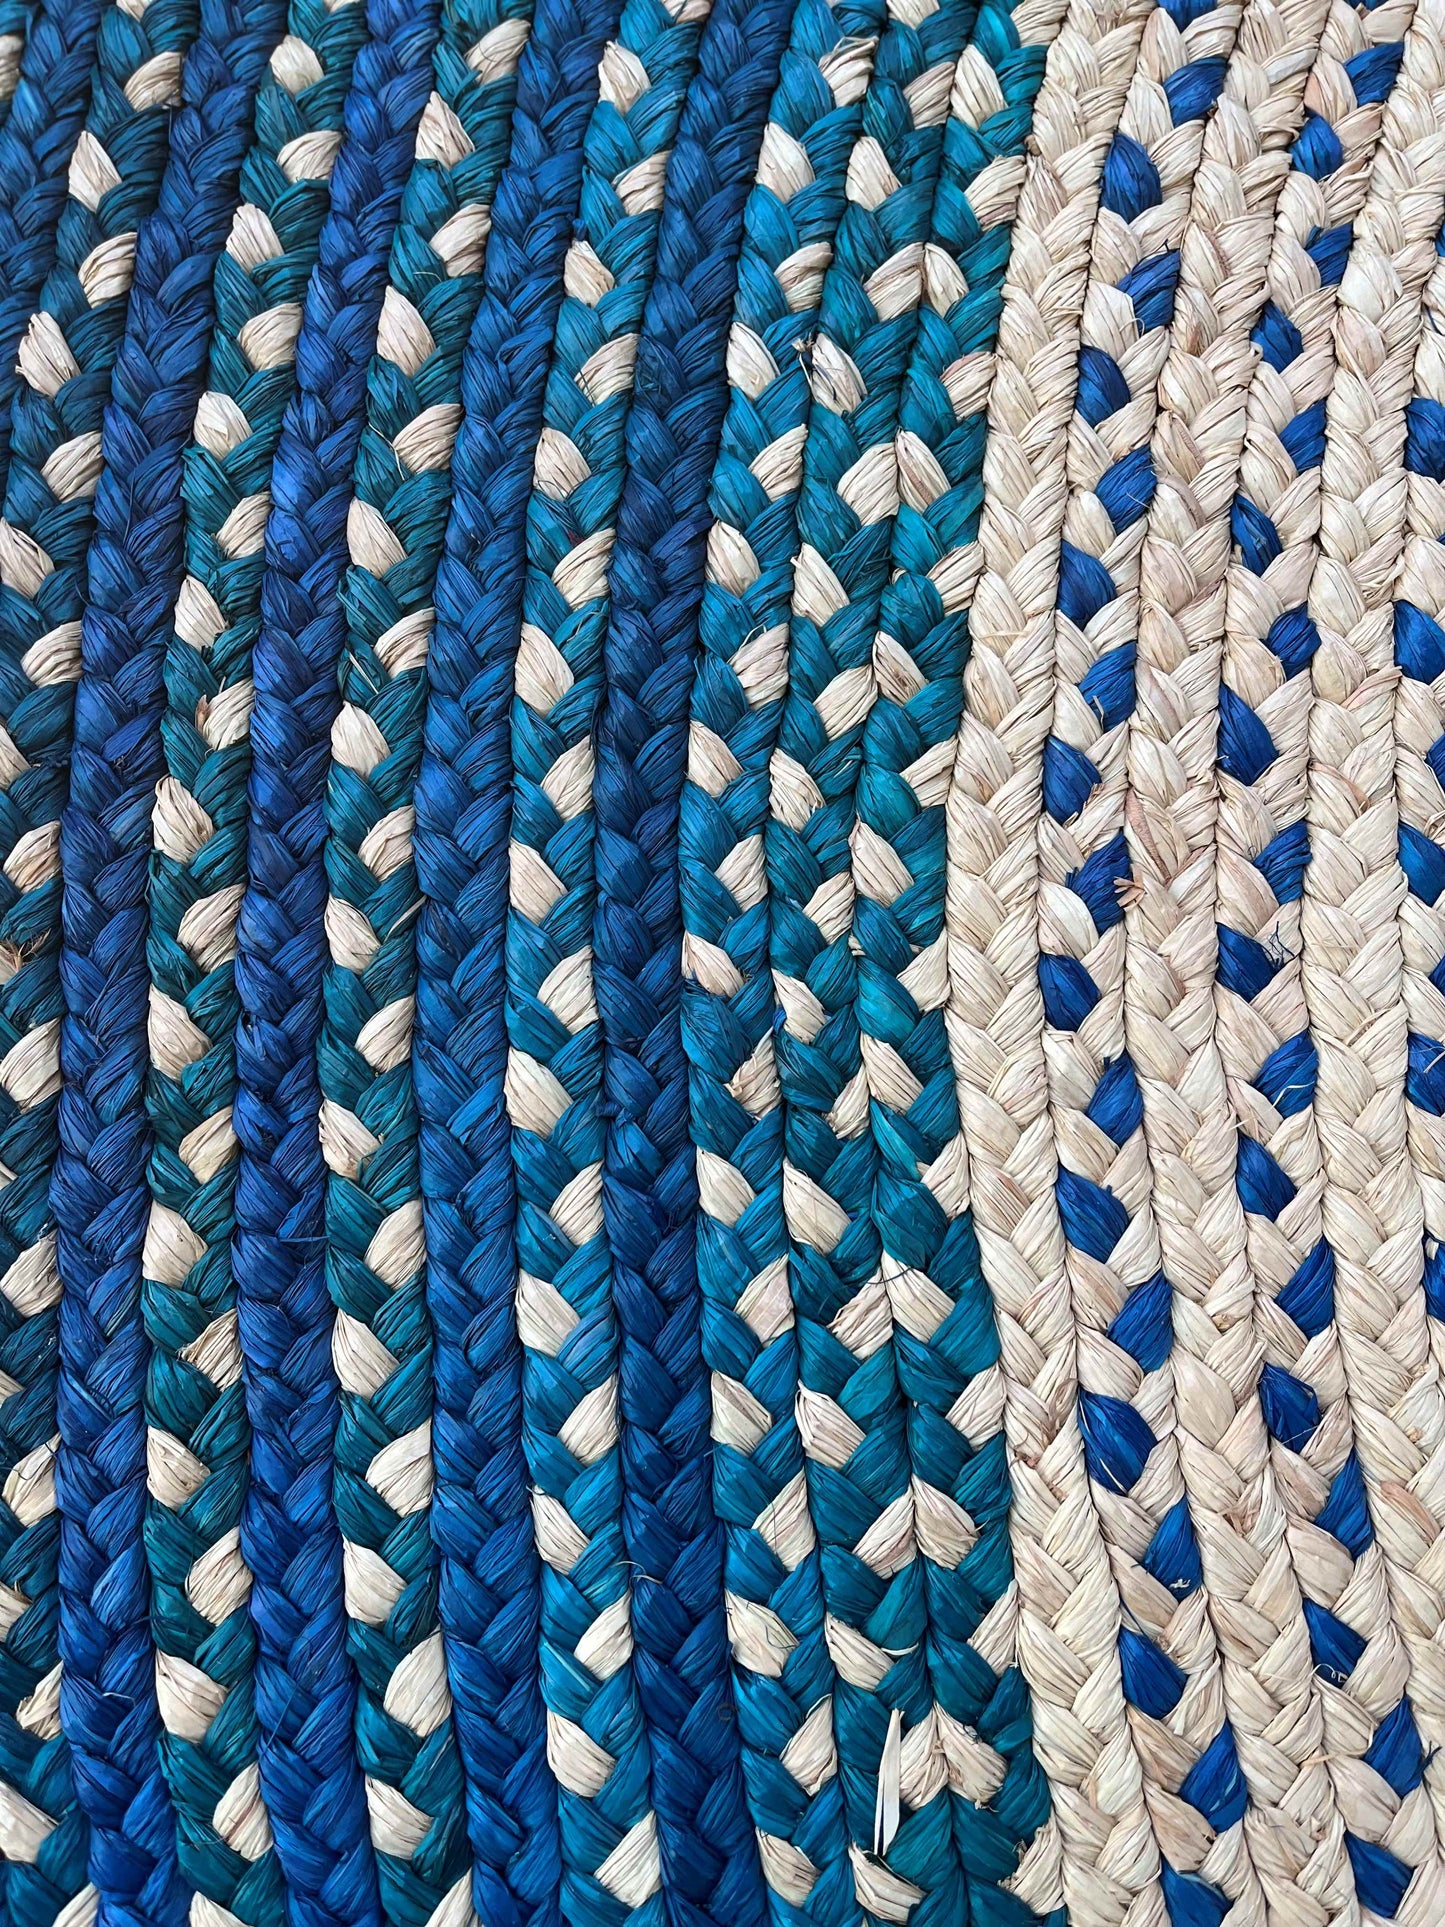 Tapis rond en raphia naturel, bleu ciel et foncé- Soazy- 200 cm Intimani Ethnique chic